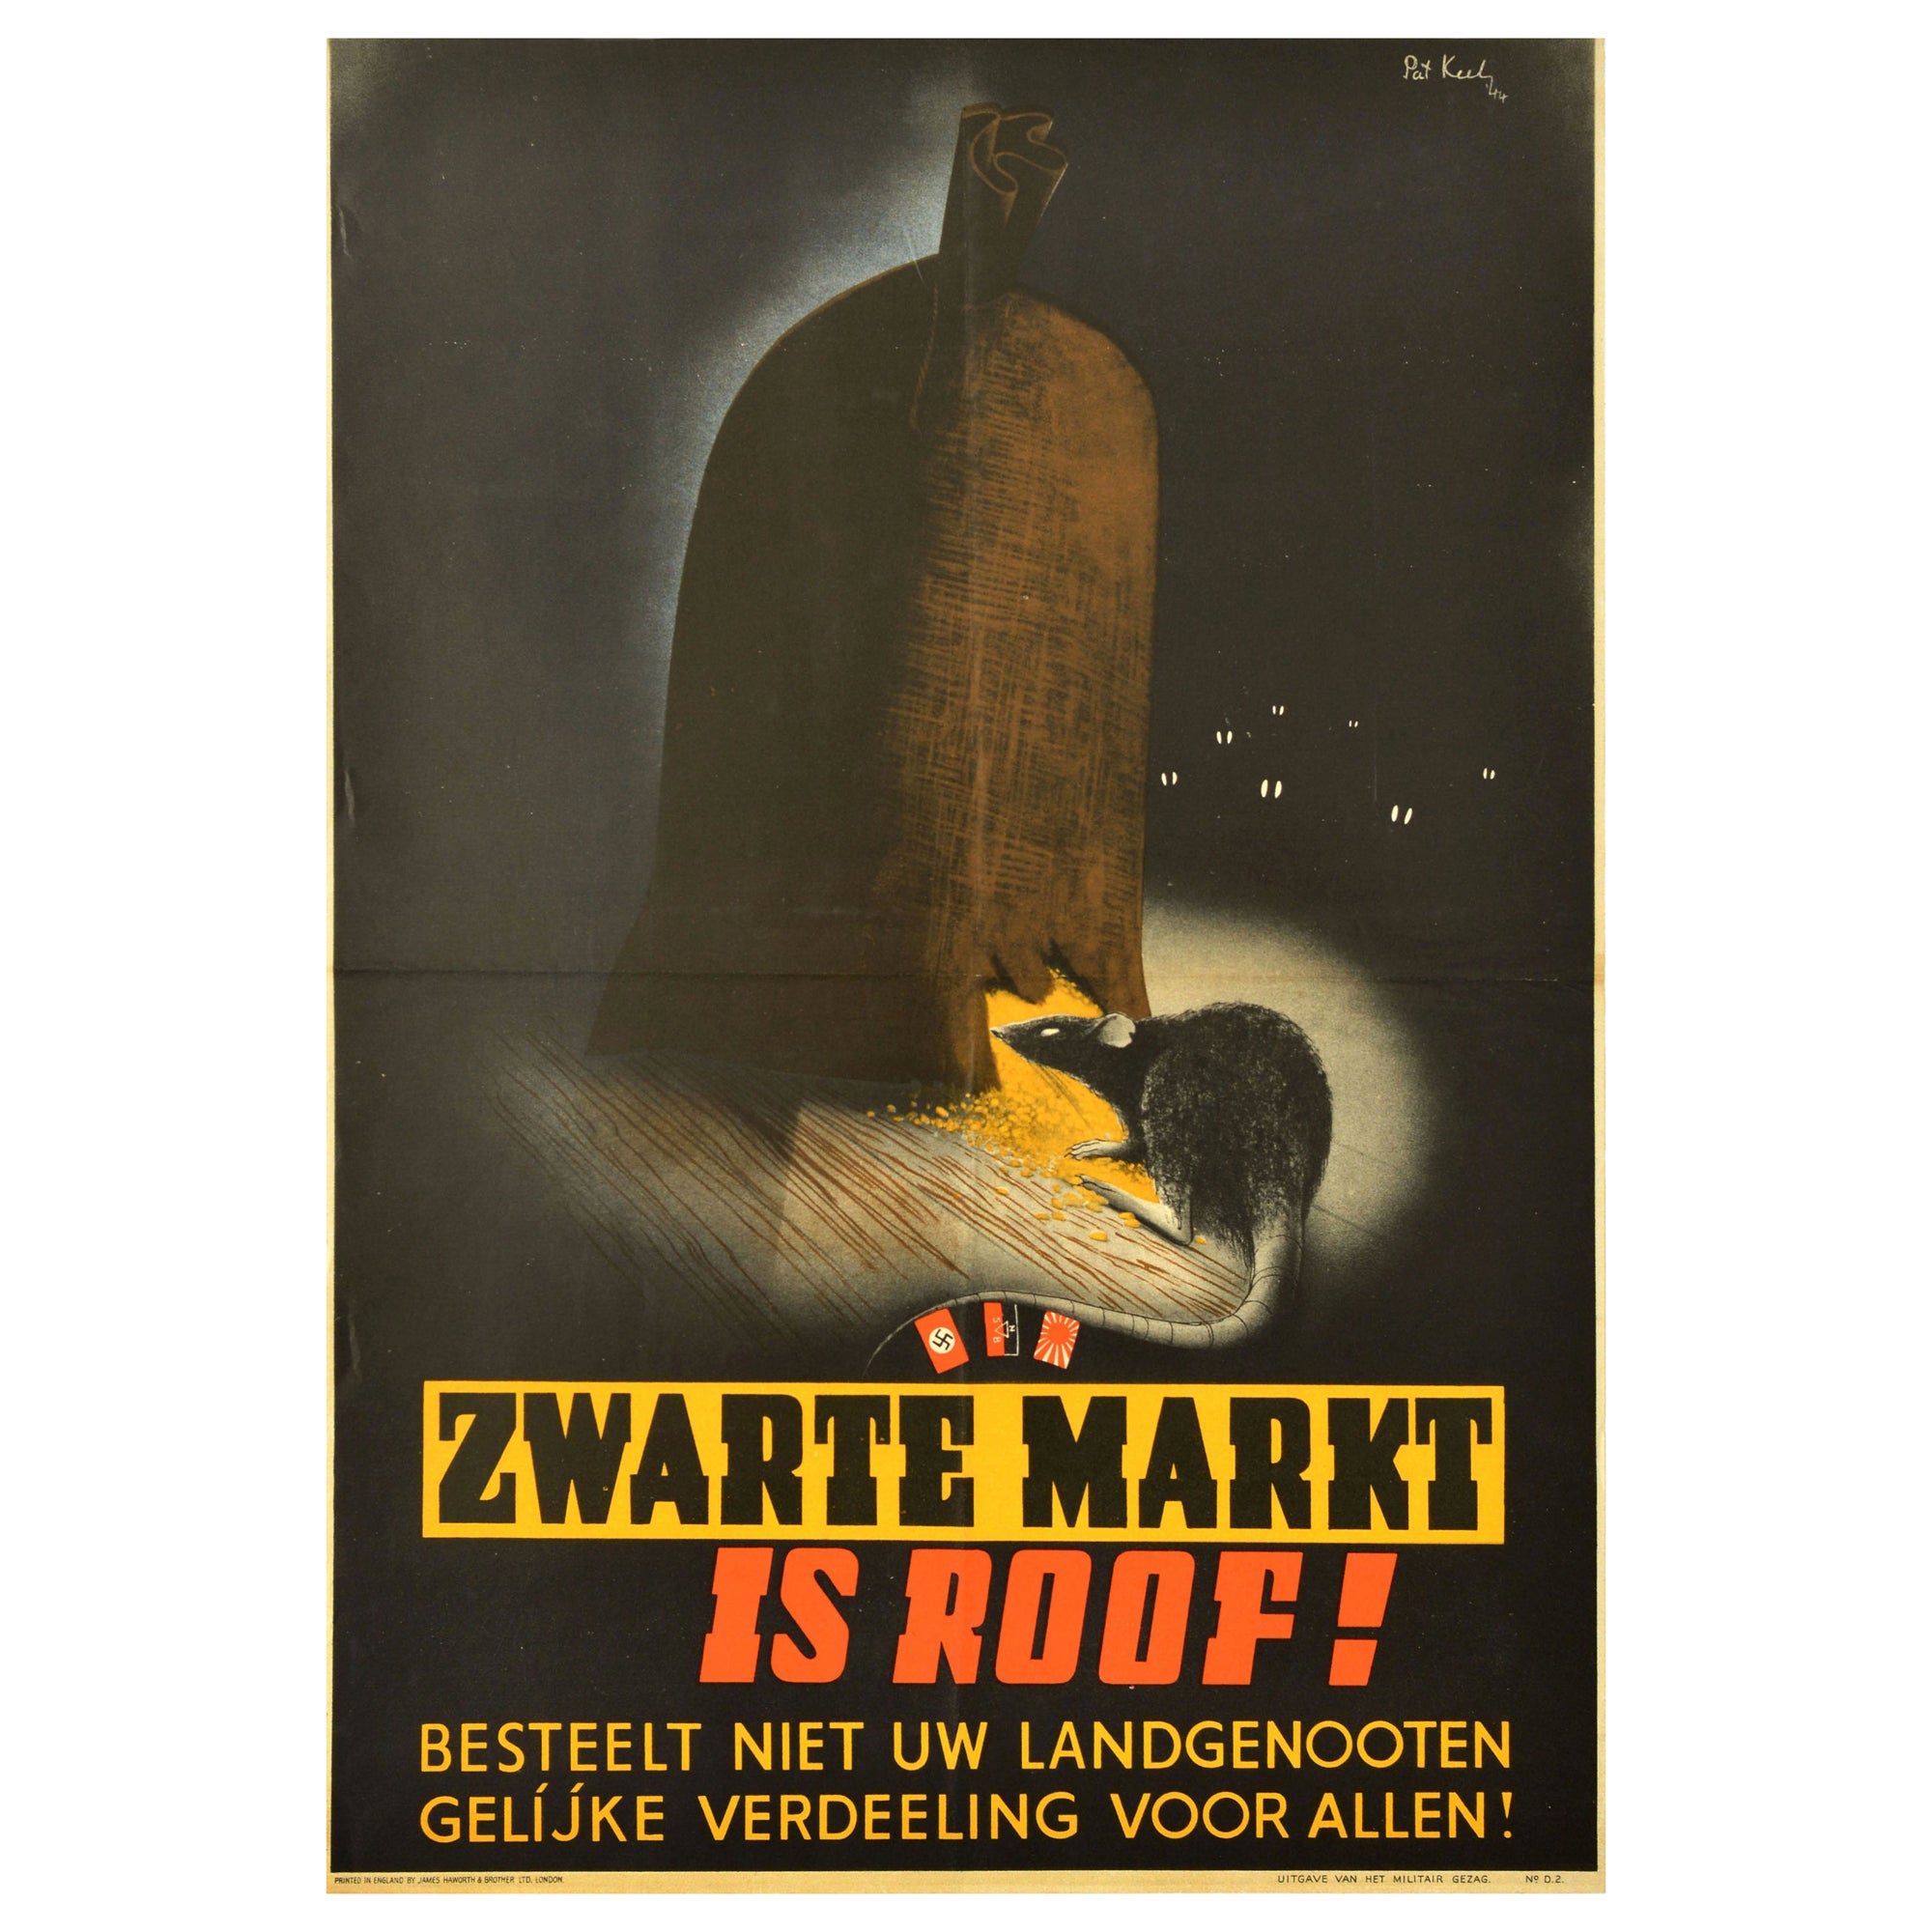 Original Vintage War Poster Zwarte Markt Black Market Theft WWII Pat Keely Rat For Sale